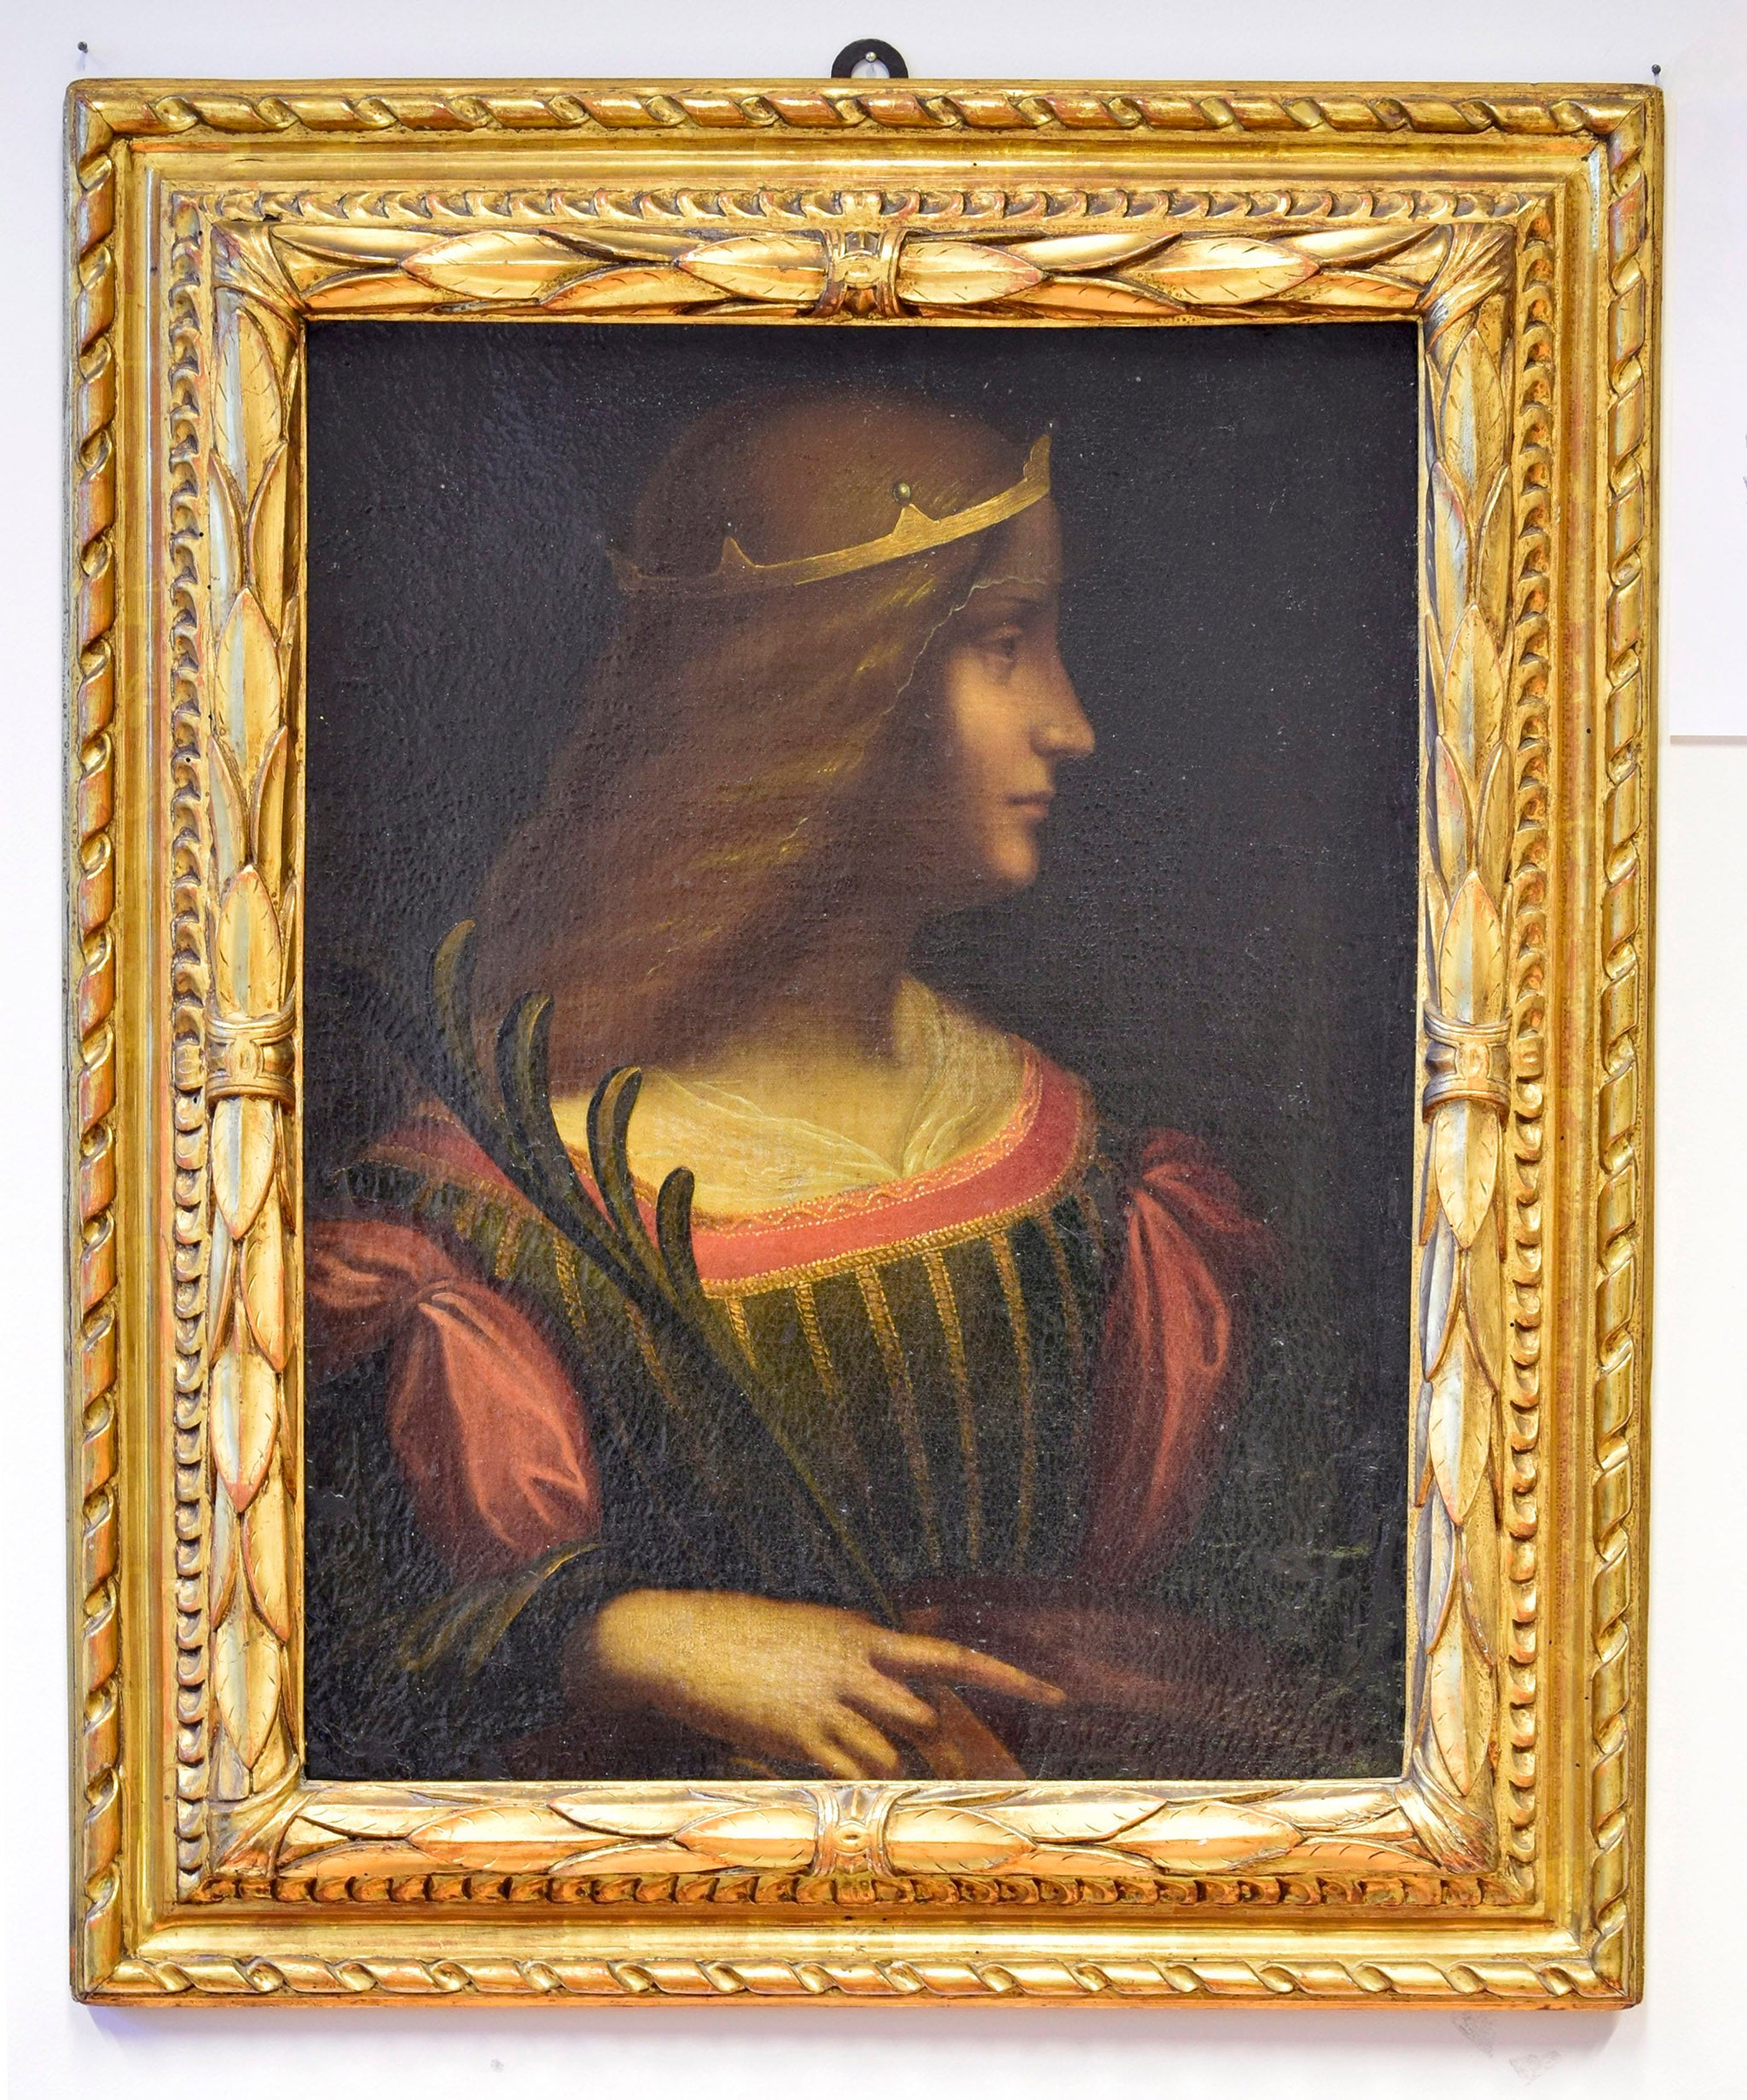 Ritratto di Isabella d'Este by Leonardo da Vinci, which was seized by the police of Ticino